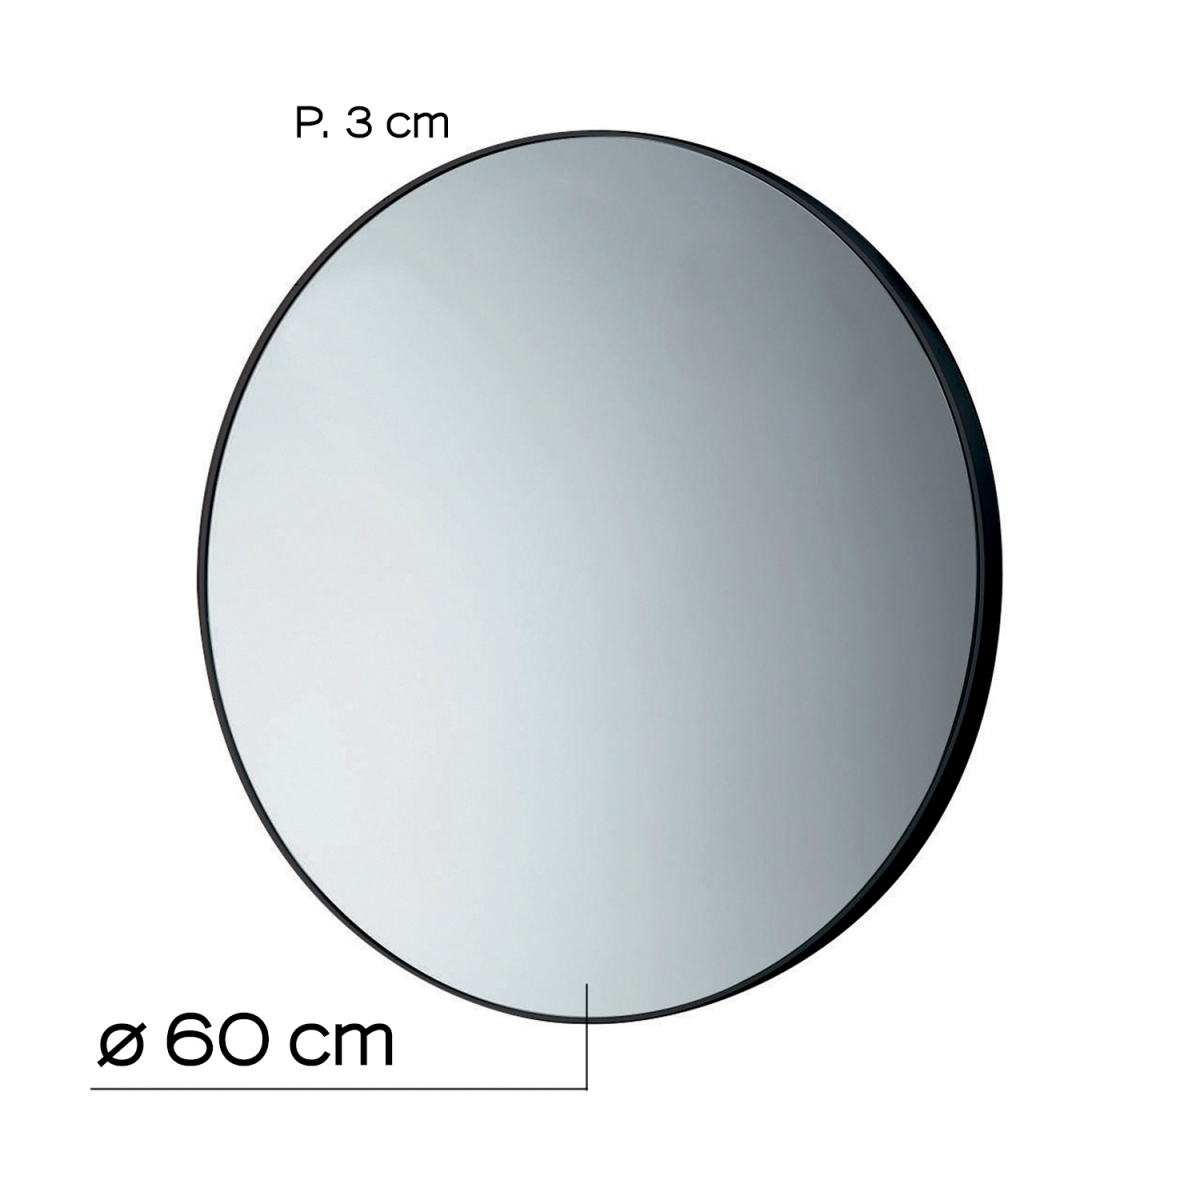 Fotos de ambiente do espelho Ø60 Cm com moldura preta [51685].